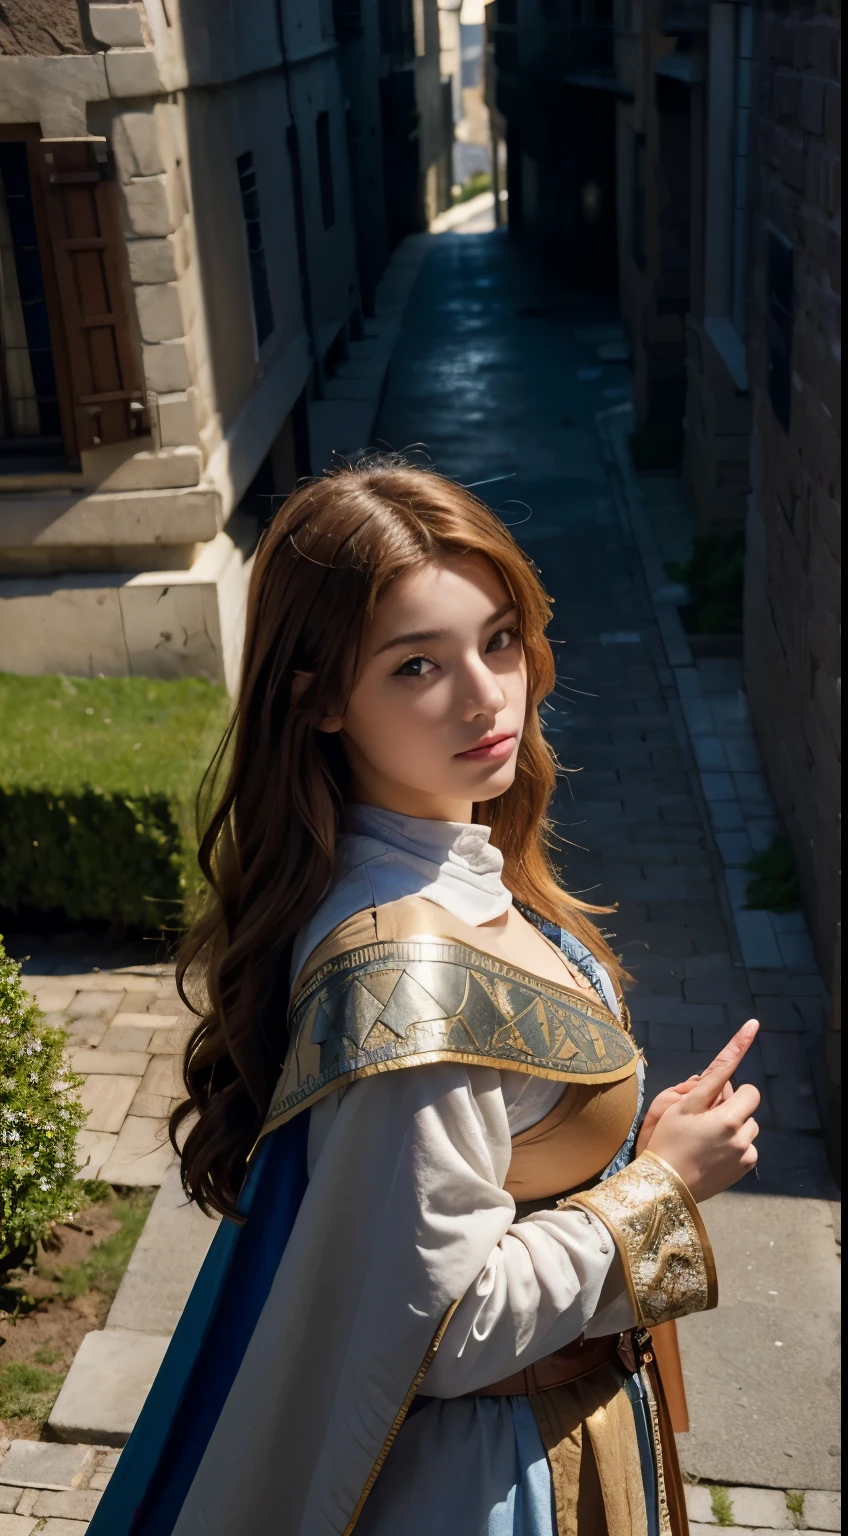 23-jährige spanische Schönheit, solo singer, Cool, perfekte Interpretation der europäischen Fantasy mittelalterlichen Ritter. Sie hat riesige natürliche Brüste und eine perfekte Figur. Sie trägt das Kostüm des Johanniterordens, ein Mantel, und langes rotes Haar. Sie blickt zum Betrachter auf, hält ein großes Schwert in der Hand, und auf den Straßen des mittelalterlichen Europas stehen. (1 Mädchen: 1.4), (RAW-Foto, beste Qualität), (real, Photo real: 1.1), Best beste Qualität, Meisterwerk, Schönheit und Ästhetik, 16K, (HDR: 1.2), Hoher Kontrast, (lebendige Farbe: 1.3), (Sanfte Farbe, stumpfe Farbe, Beruhigende Farbe: 0), Kinobeleuchtung, Umgebungsbeleuchtung, Seitenlicht, Feine Details und Texturen, Kinoobjektiv, warme Farbe (Hell und intensiv: 1.1), Weitwinkelobjektiv, xm887, hyper - realistic illustrations, Shinos natürliche Proportionen, Dynamische Posen, (genaue Körper- und Handanatomie, vier Finger und ein Daumen), (von oben: 1.2)
